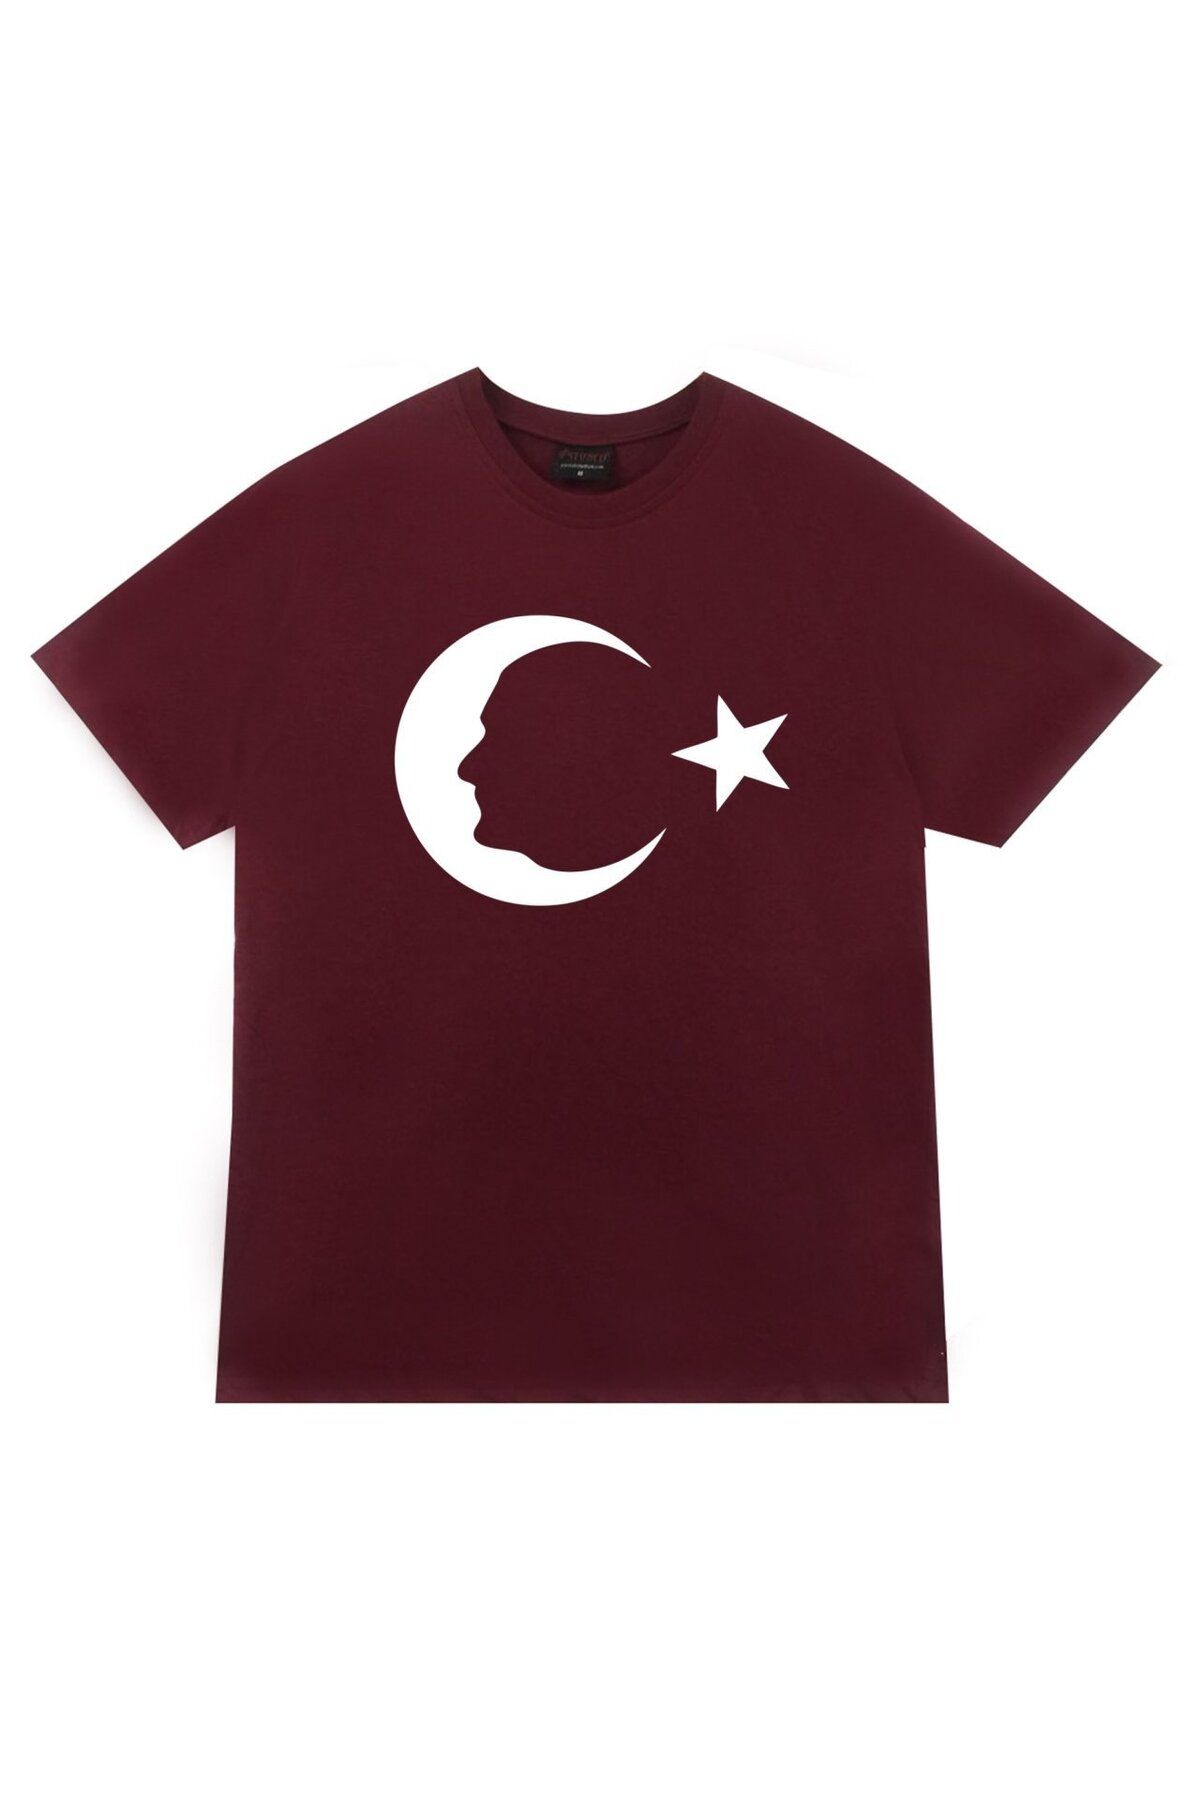 fame-stoned Gazi Mustafa Kemal Atatürk Baskılı T-shirt